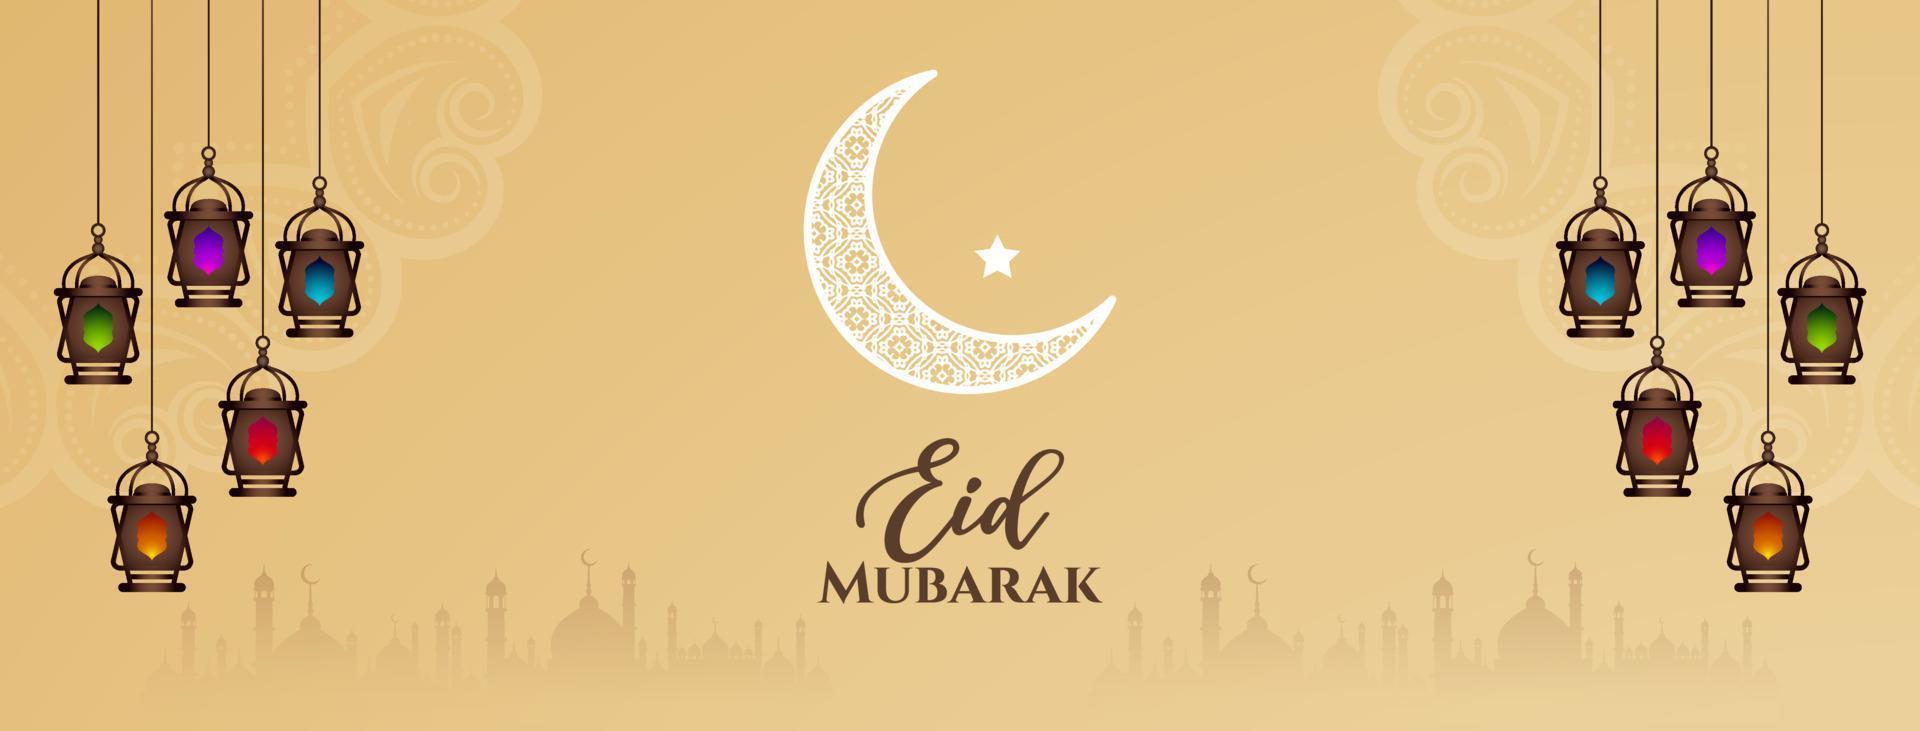 eid mubarak musulman culturel Festival salutation bannière conception vecteur